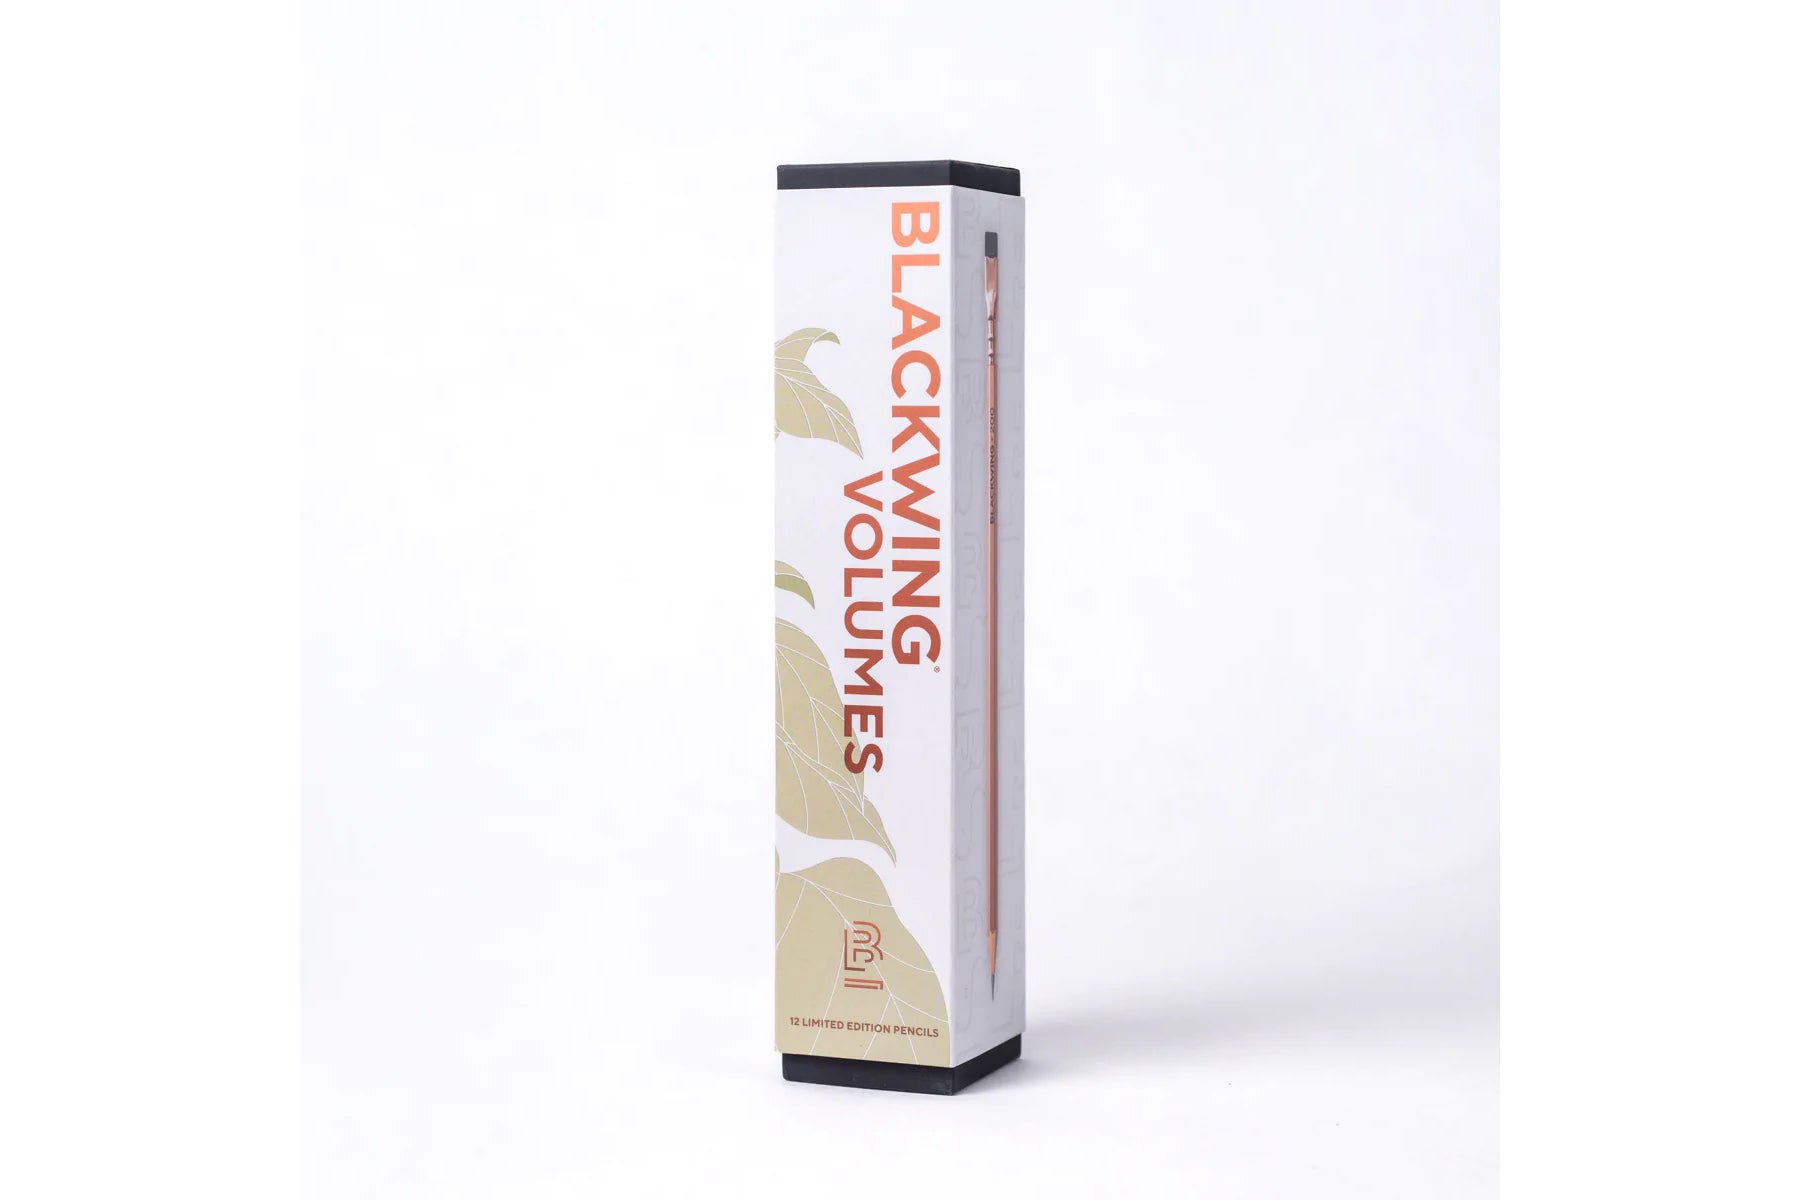 Blackwing Pencils - Volume 200 | Flywheel | Stationery | Tasmania